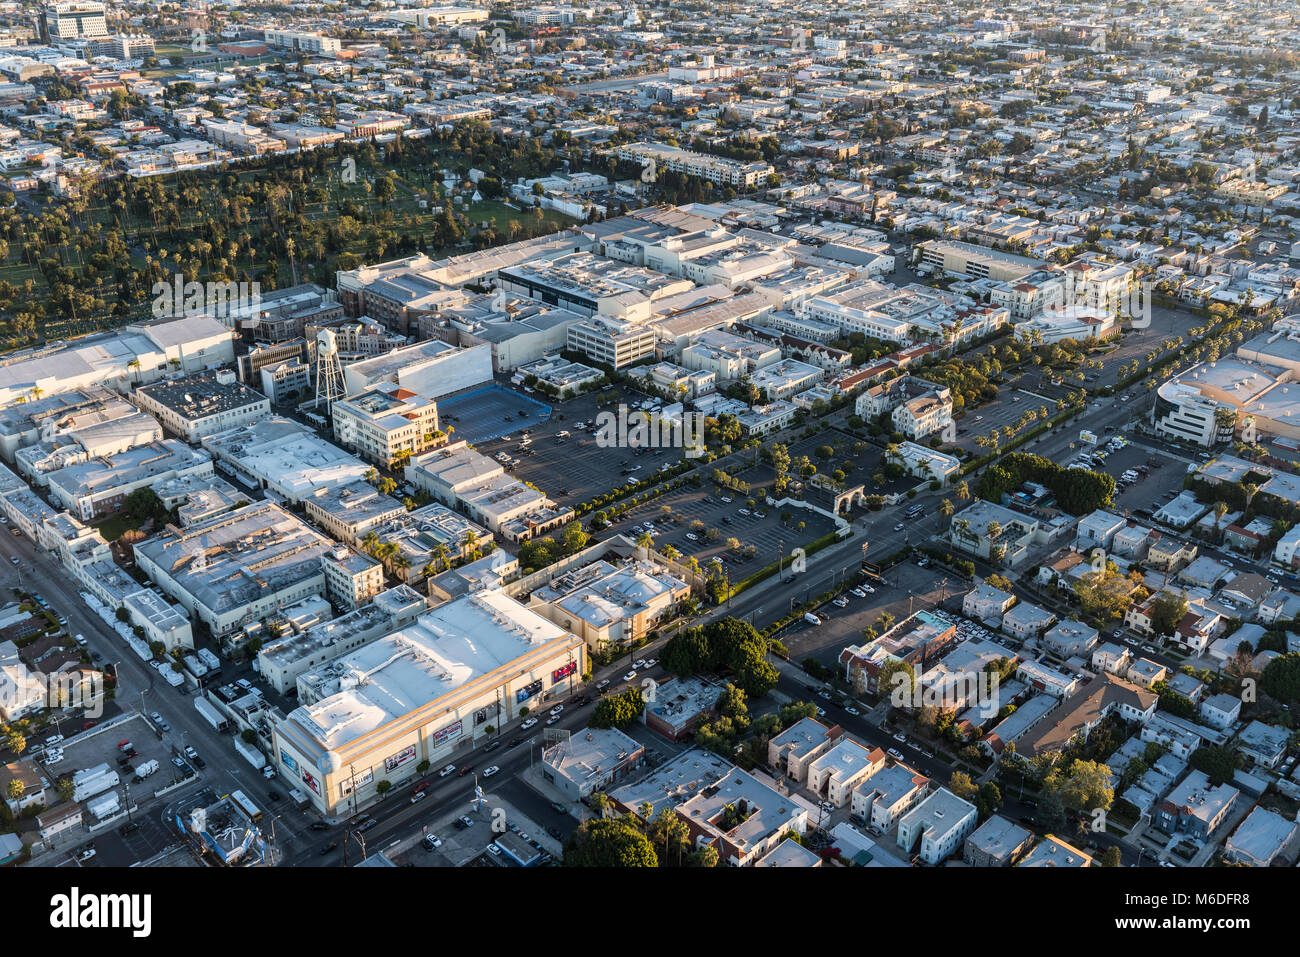 Los Angeles, Californie, USA - 20 Février 2018 : Vue aérienne de Paramount Pictures Studio sur Melrose Av à Hollywood. Banque D'Images